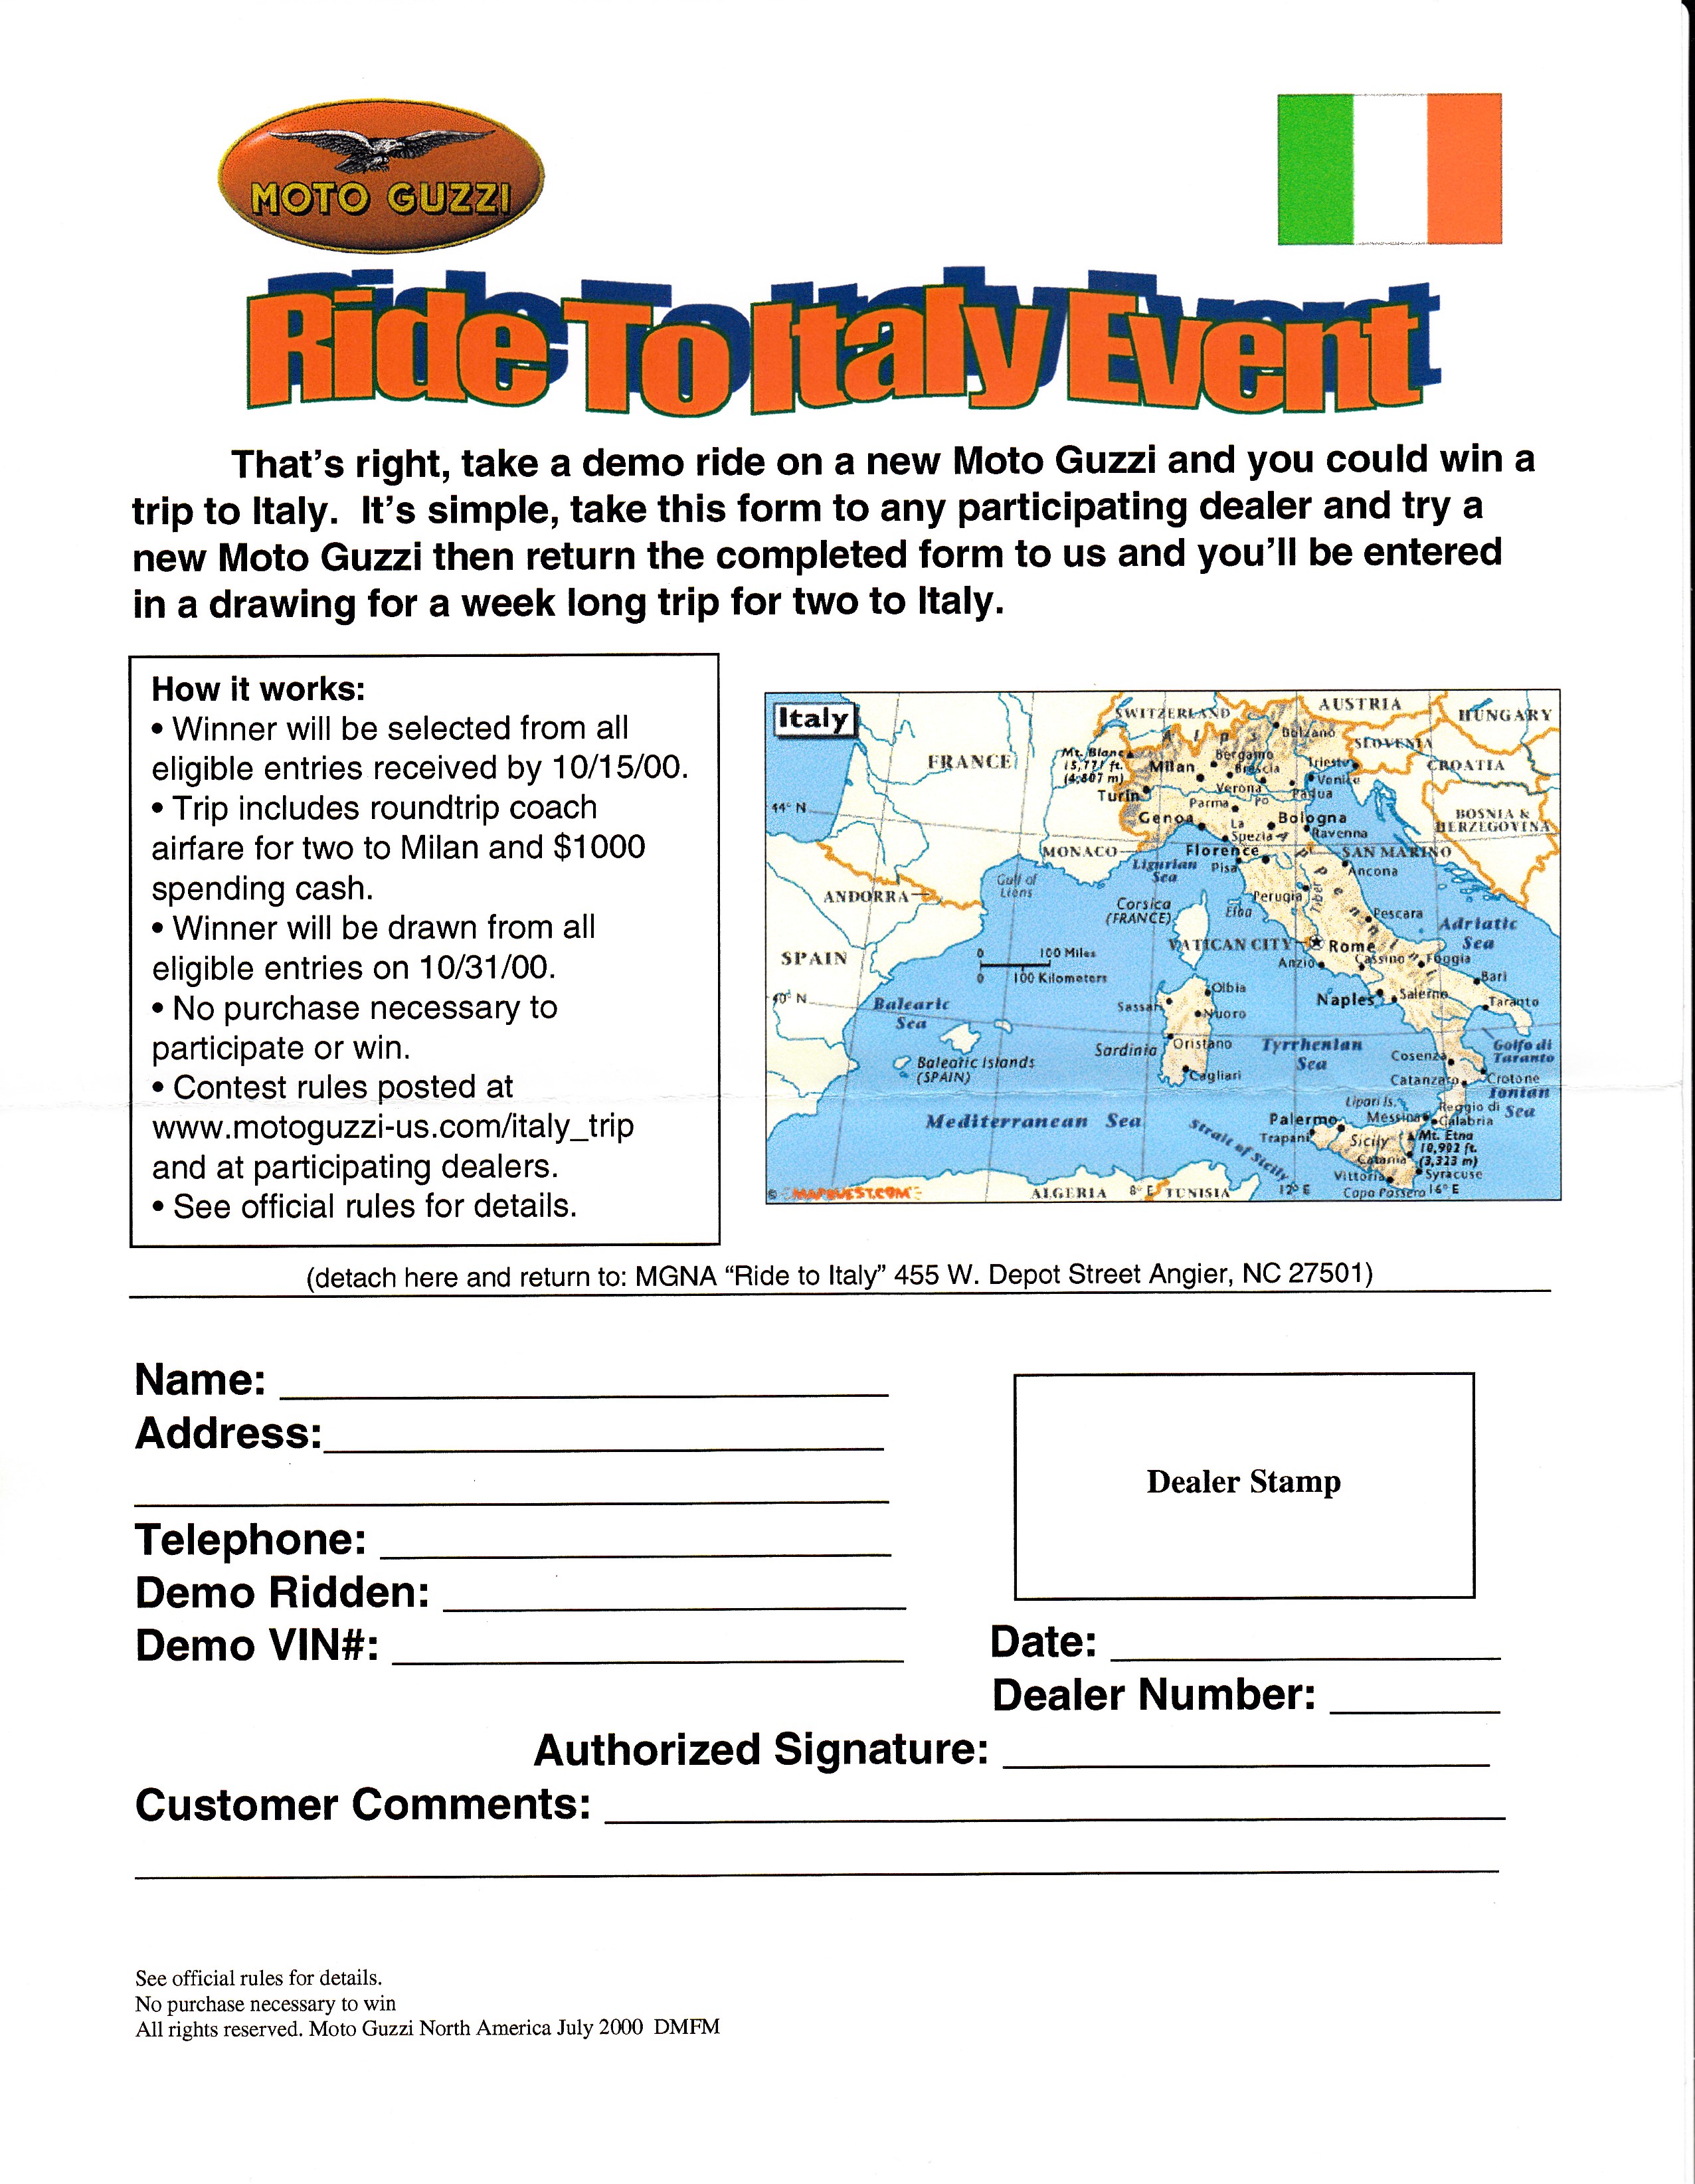 Press release - Moto Guzzi Ride to Italy event 2000